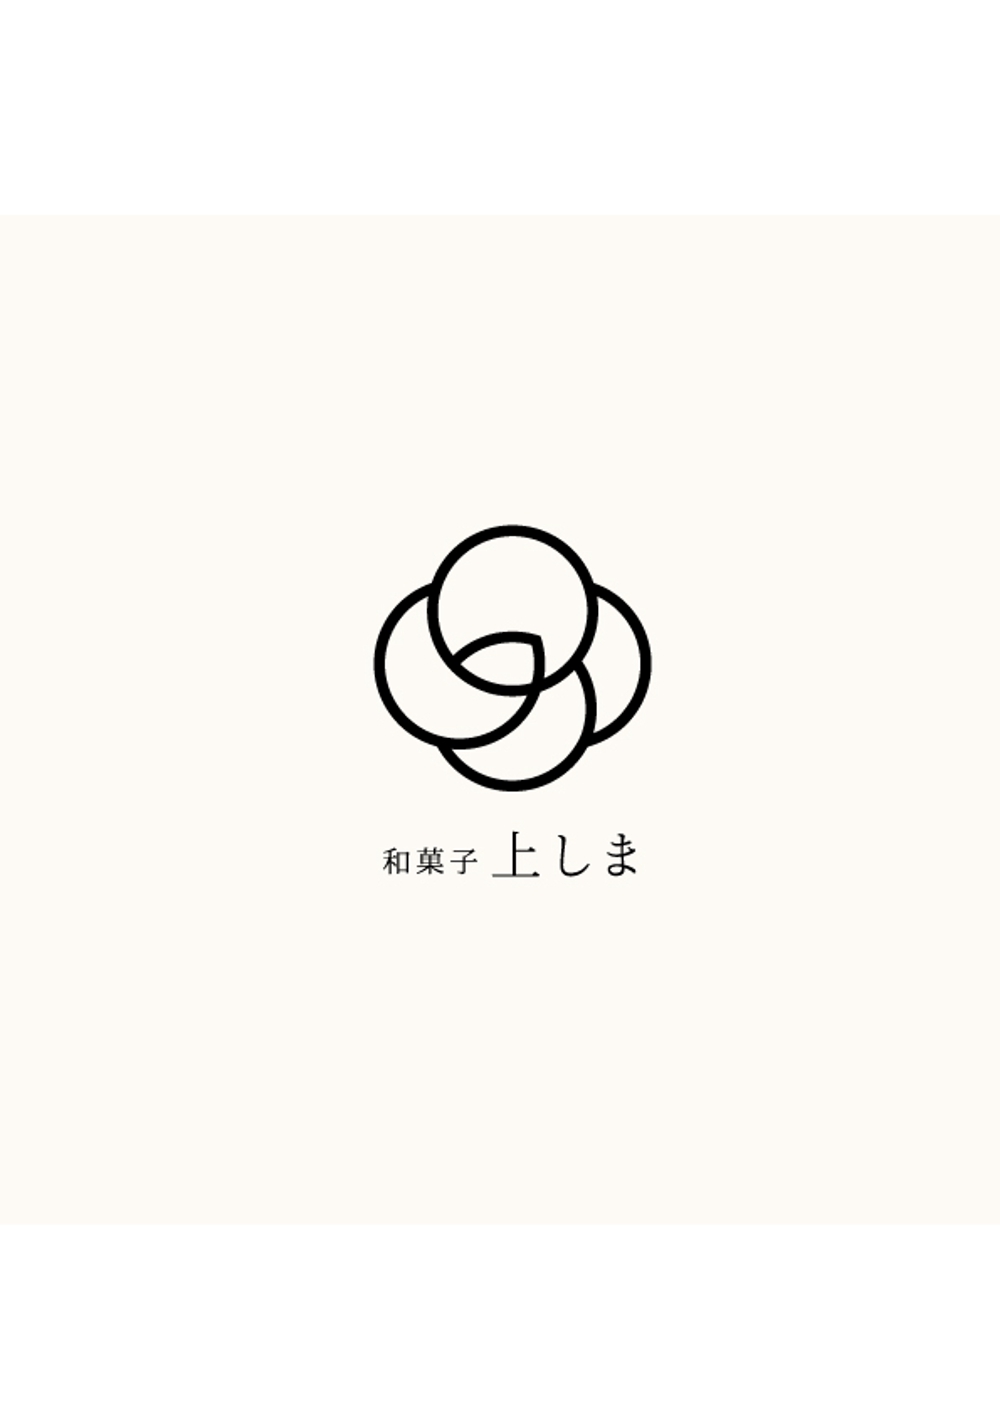 落雁や琥珀糖を作る創業30年の和菓子屋のロゴ作成